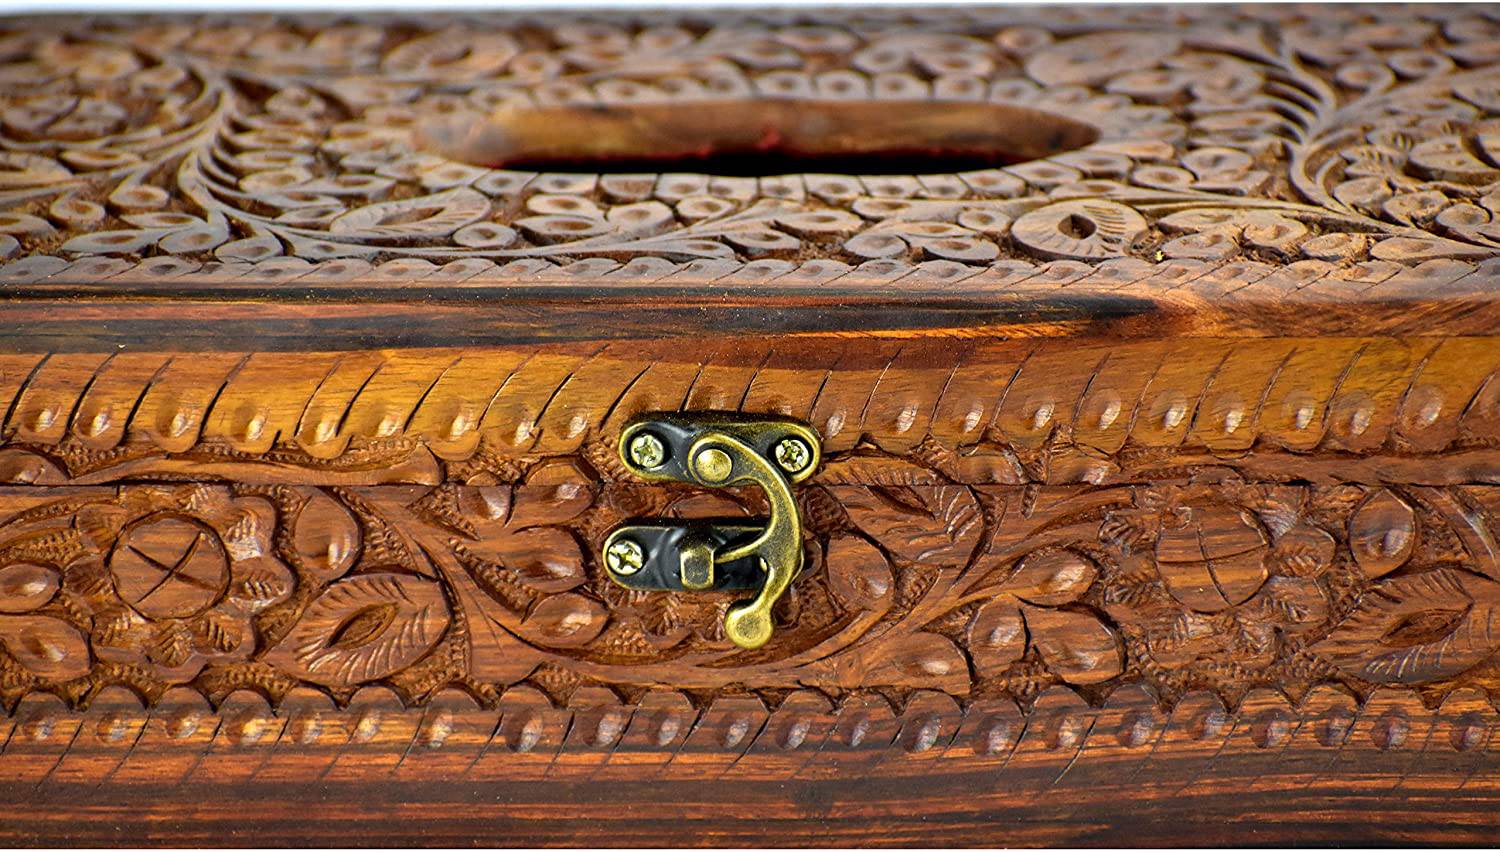 Wooden Handmade Rectangular Tissue Box with Velvet Finish Inside - Intense oud